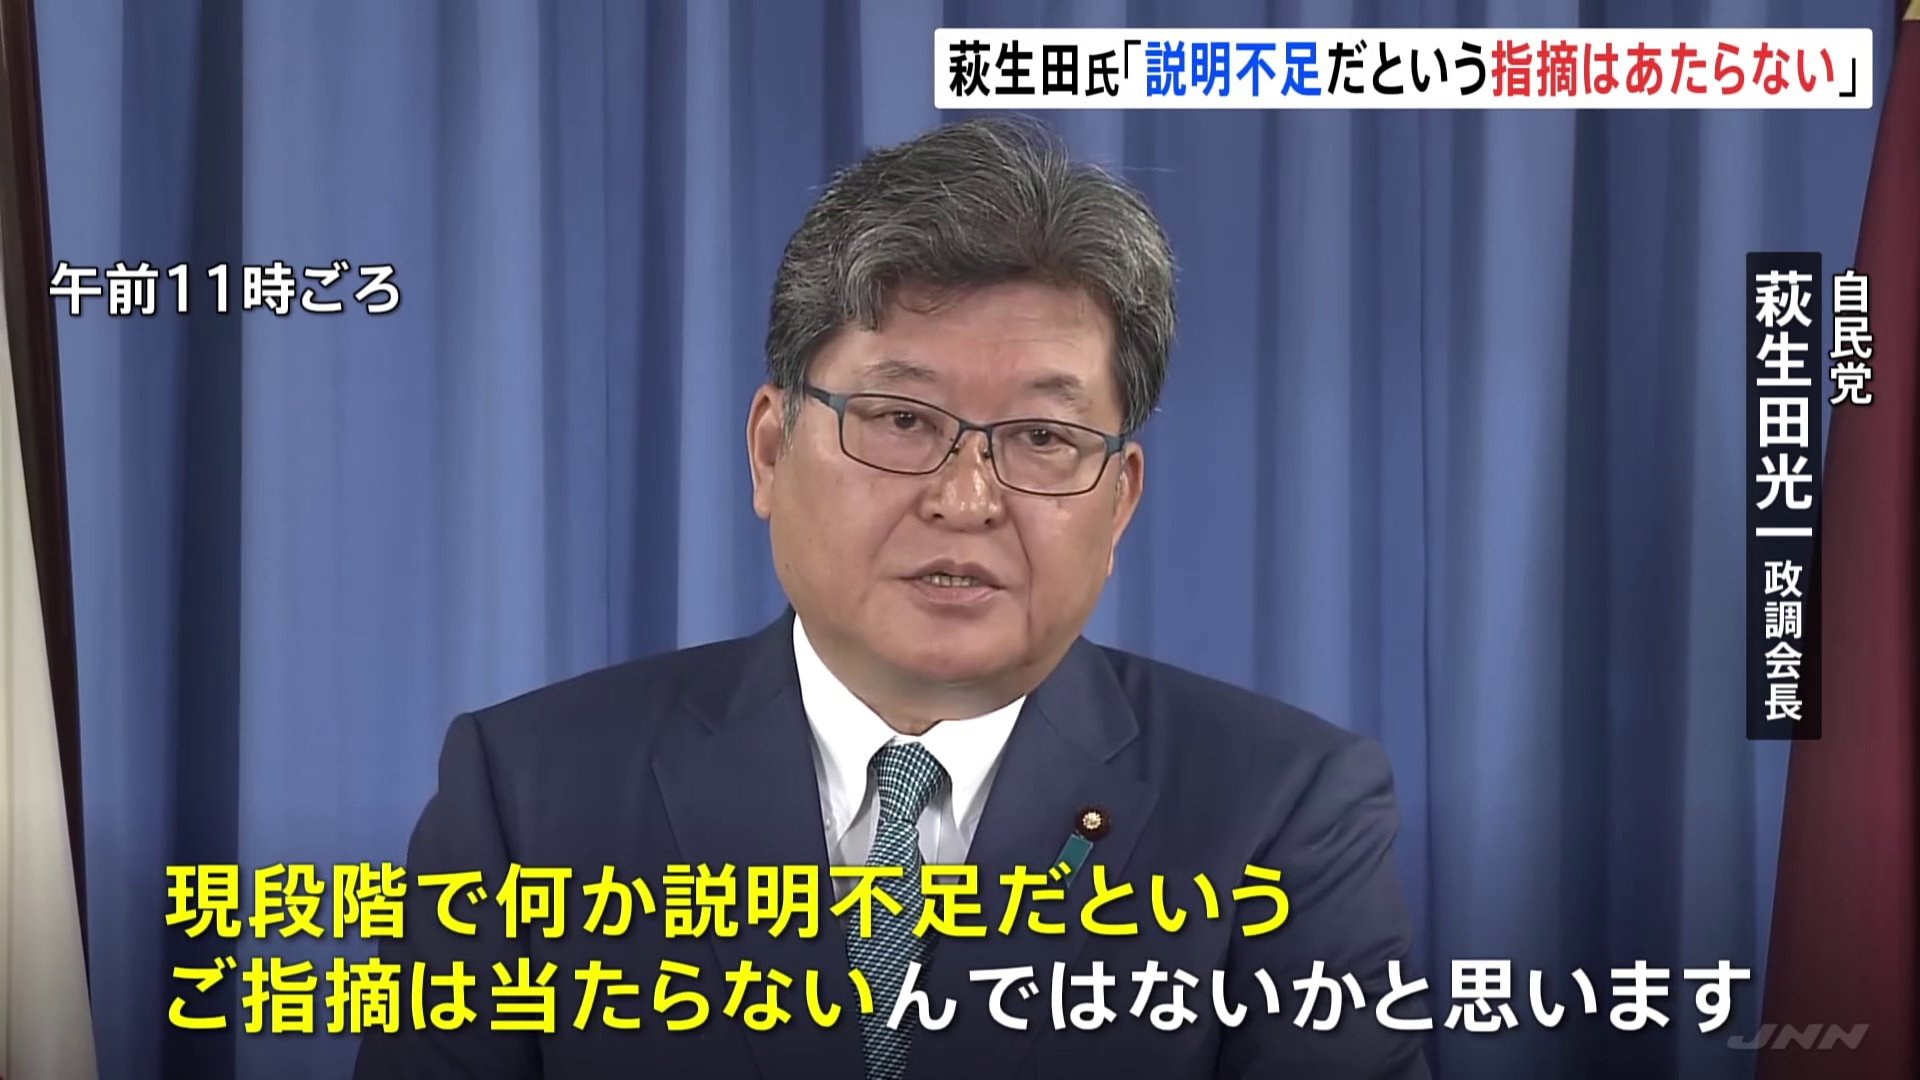 自民・萩生田政調会長、旧統一教会との関係「現段階で説明不足という指摘は当たらない」